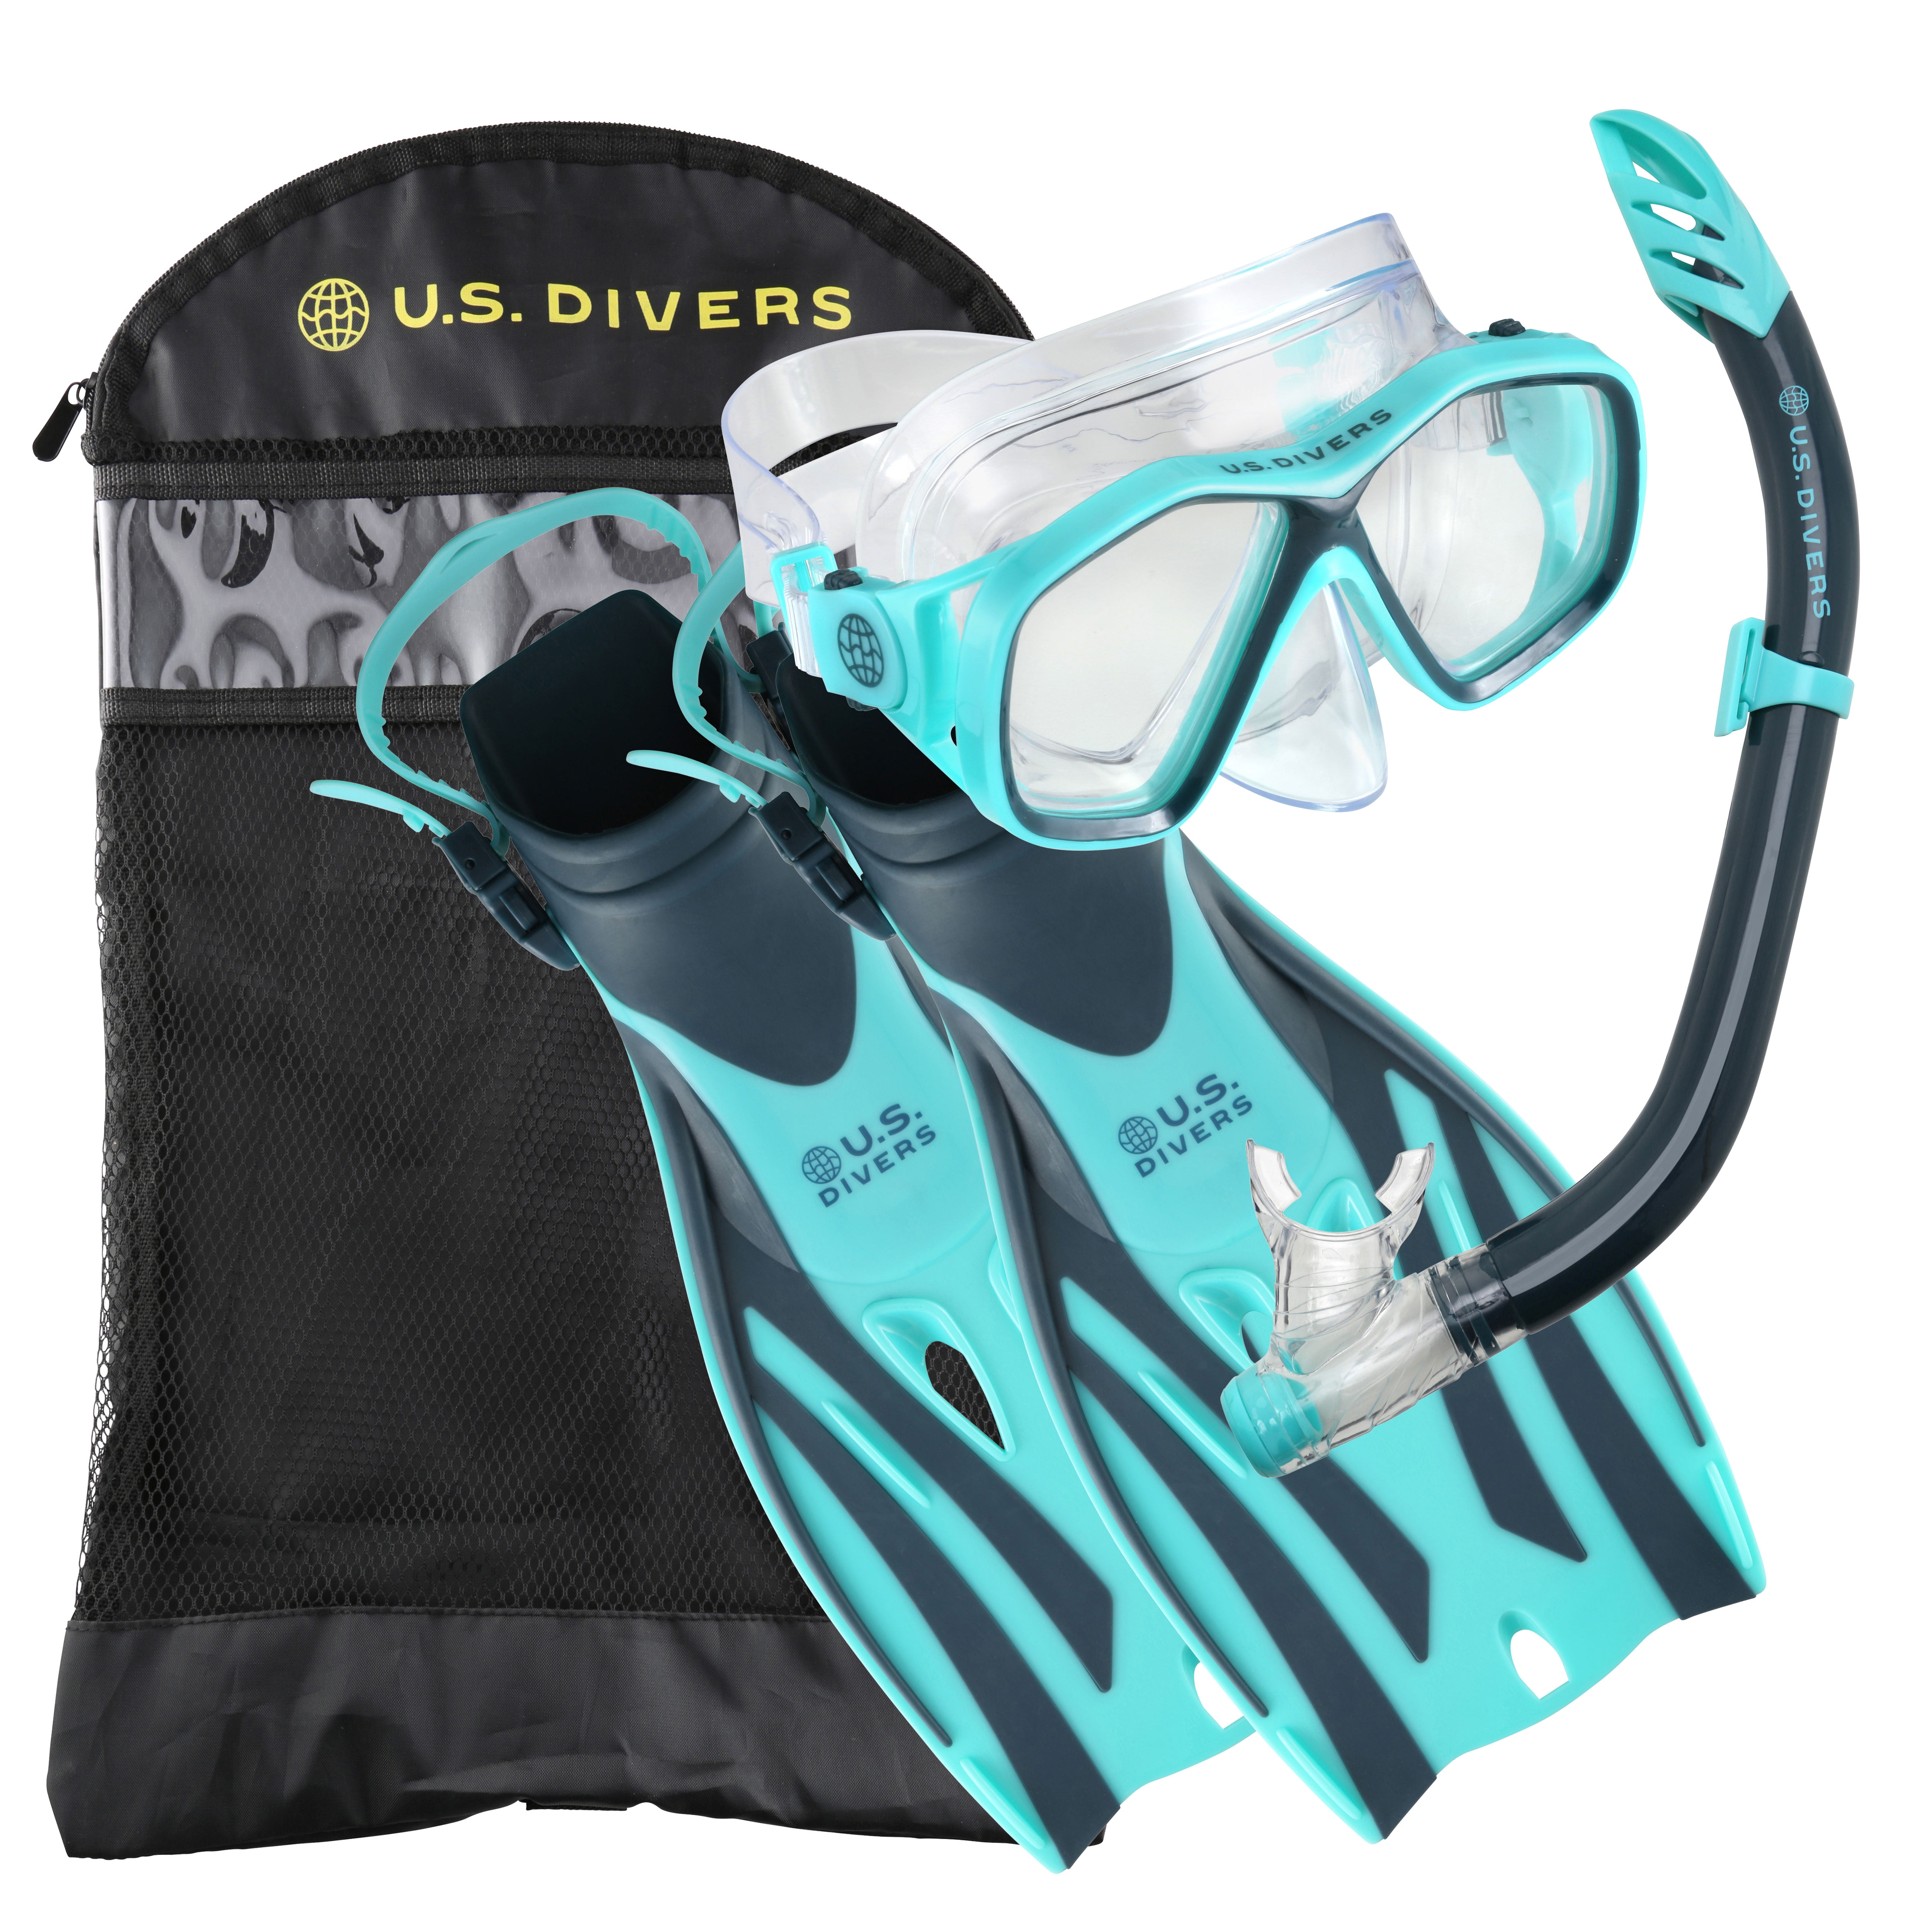 Bag *NEW* US DIVERS Explore Adult Snorkeling Set Fin L/XL Mask Blue Snorkel 